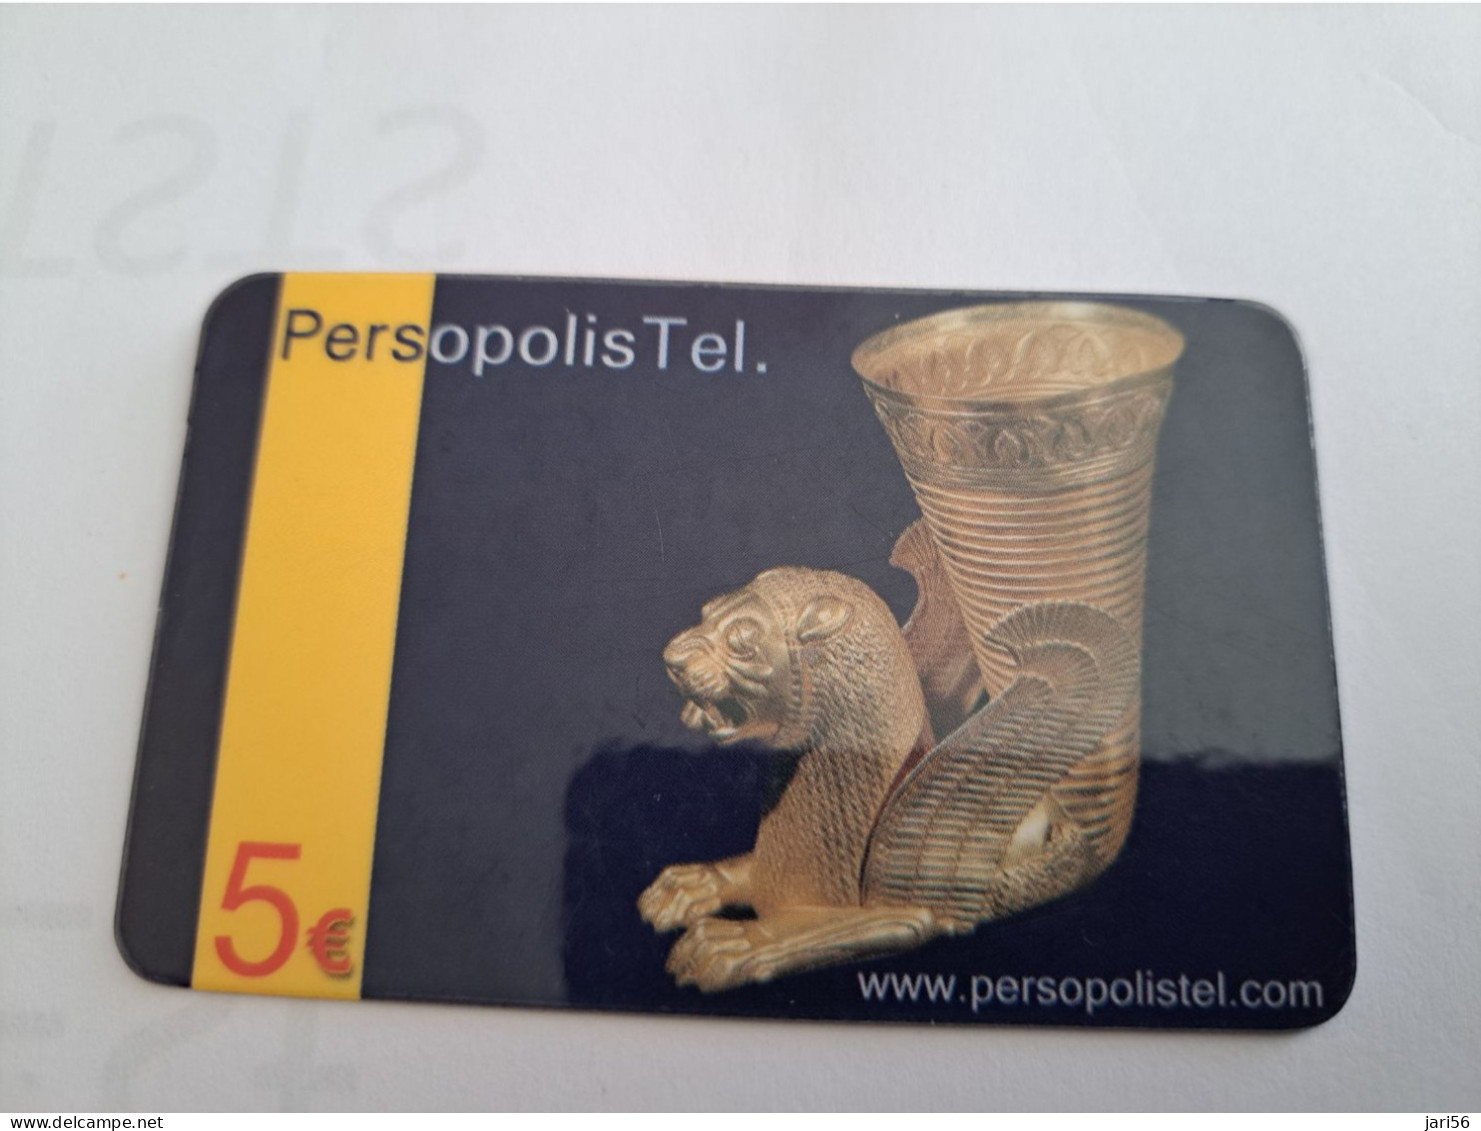 DUITSLAND/GERMANY  € 5,- / PERSOPOLIS TEL / LION HEAD   ON CARD        Fine Used  PREPAID  **16532** - GSM, Voorafbetaald & Herlaadbare Kaarten